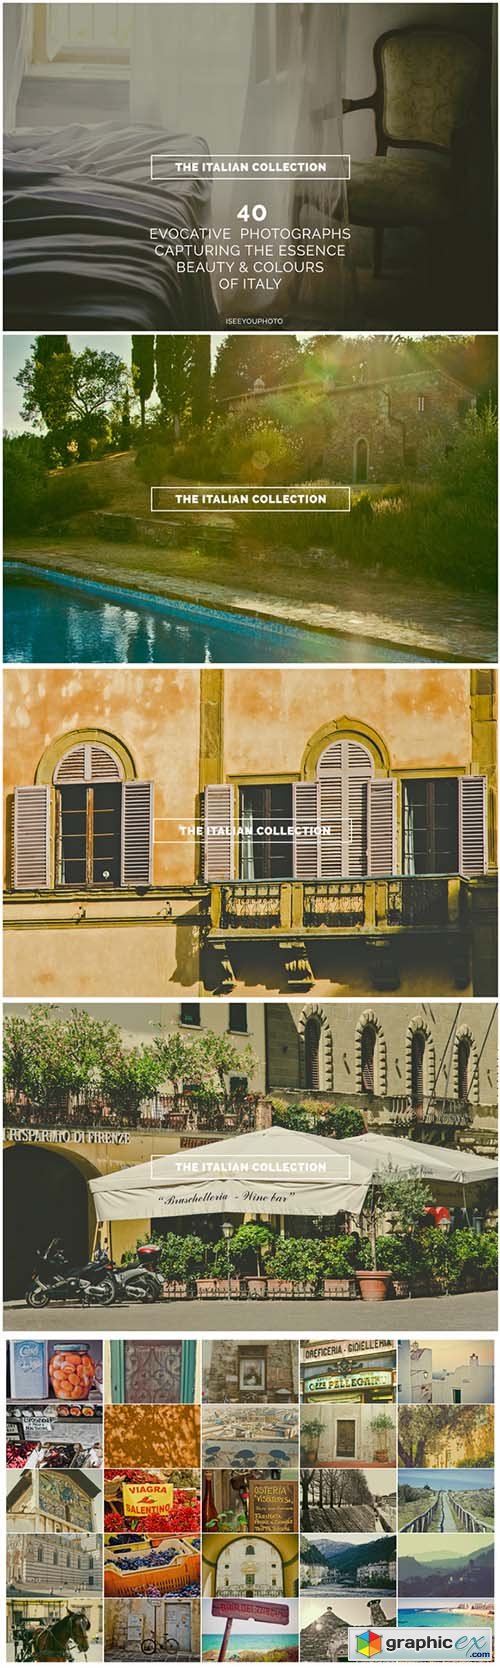  The Italian Collection - Iseeyouphoto